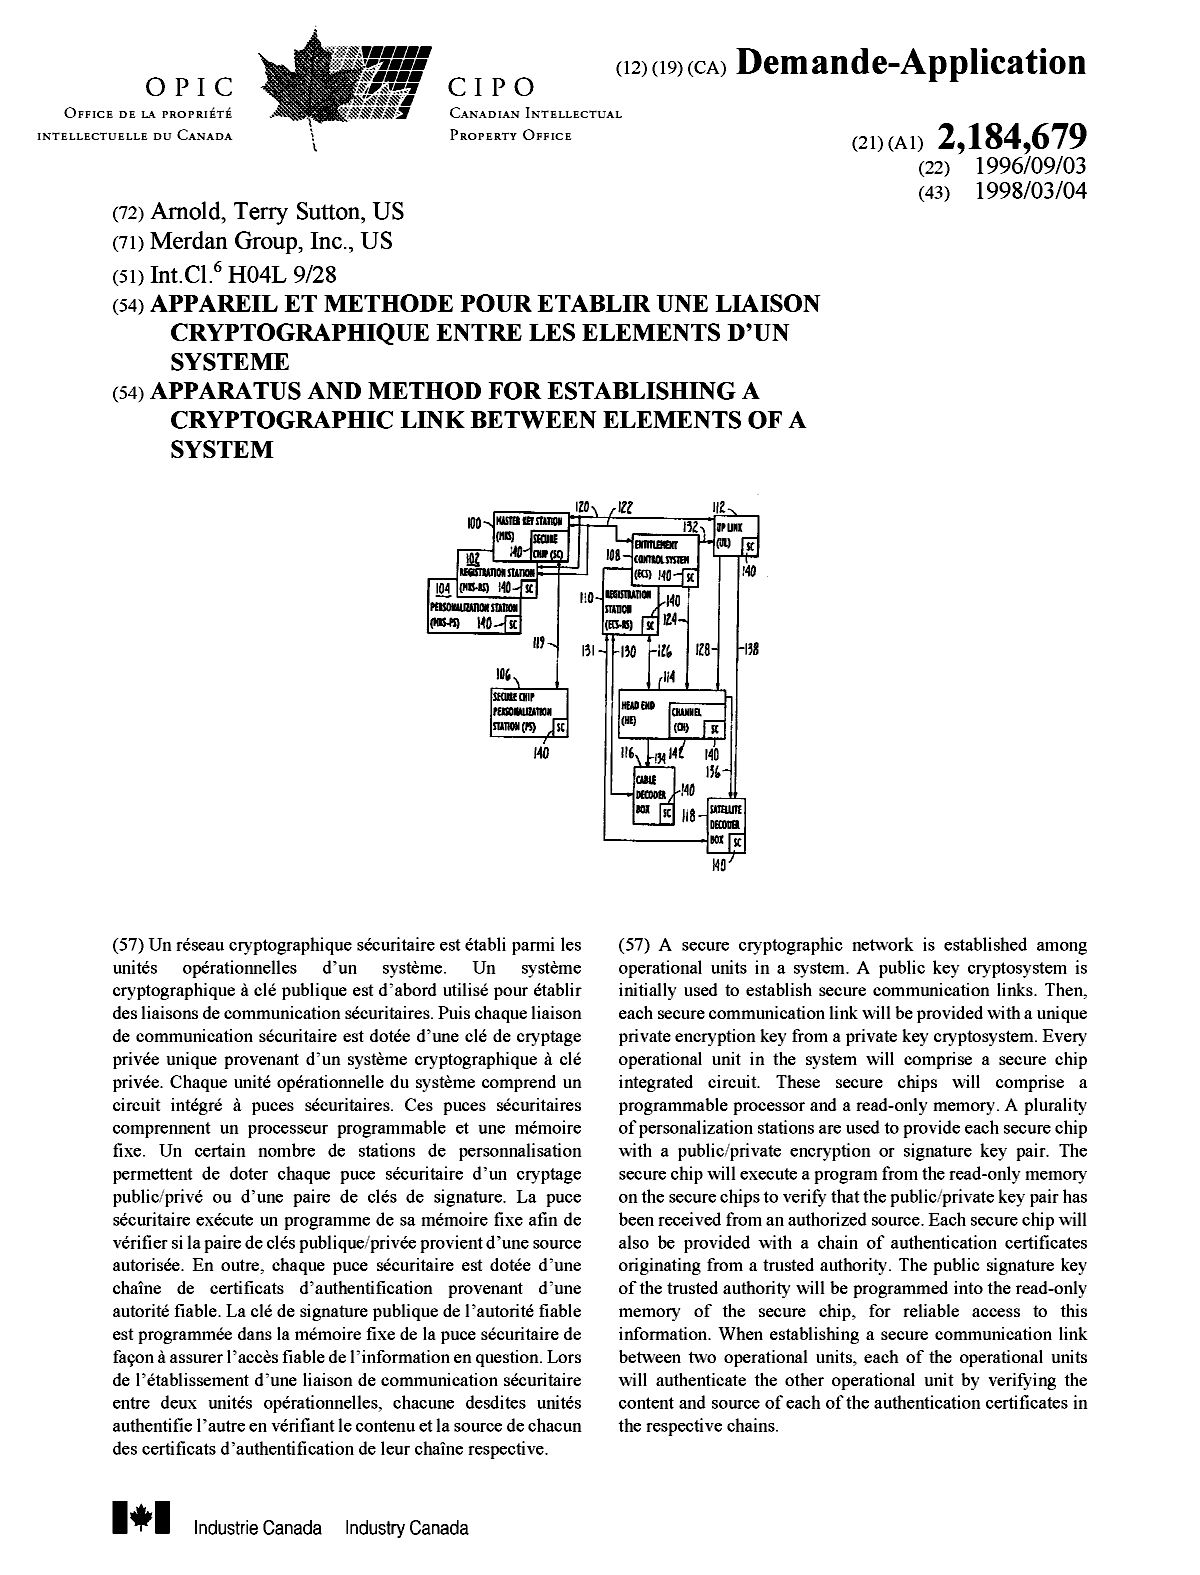 Document de brevet canadien 2184679. Page couverture 20001214. Image 1 de 1